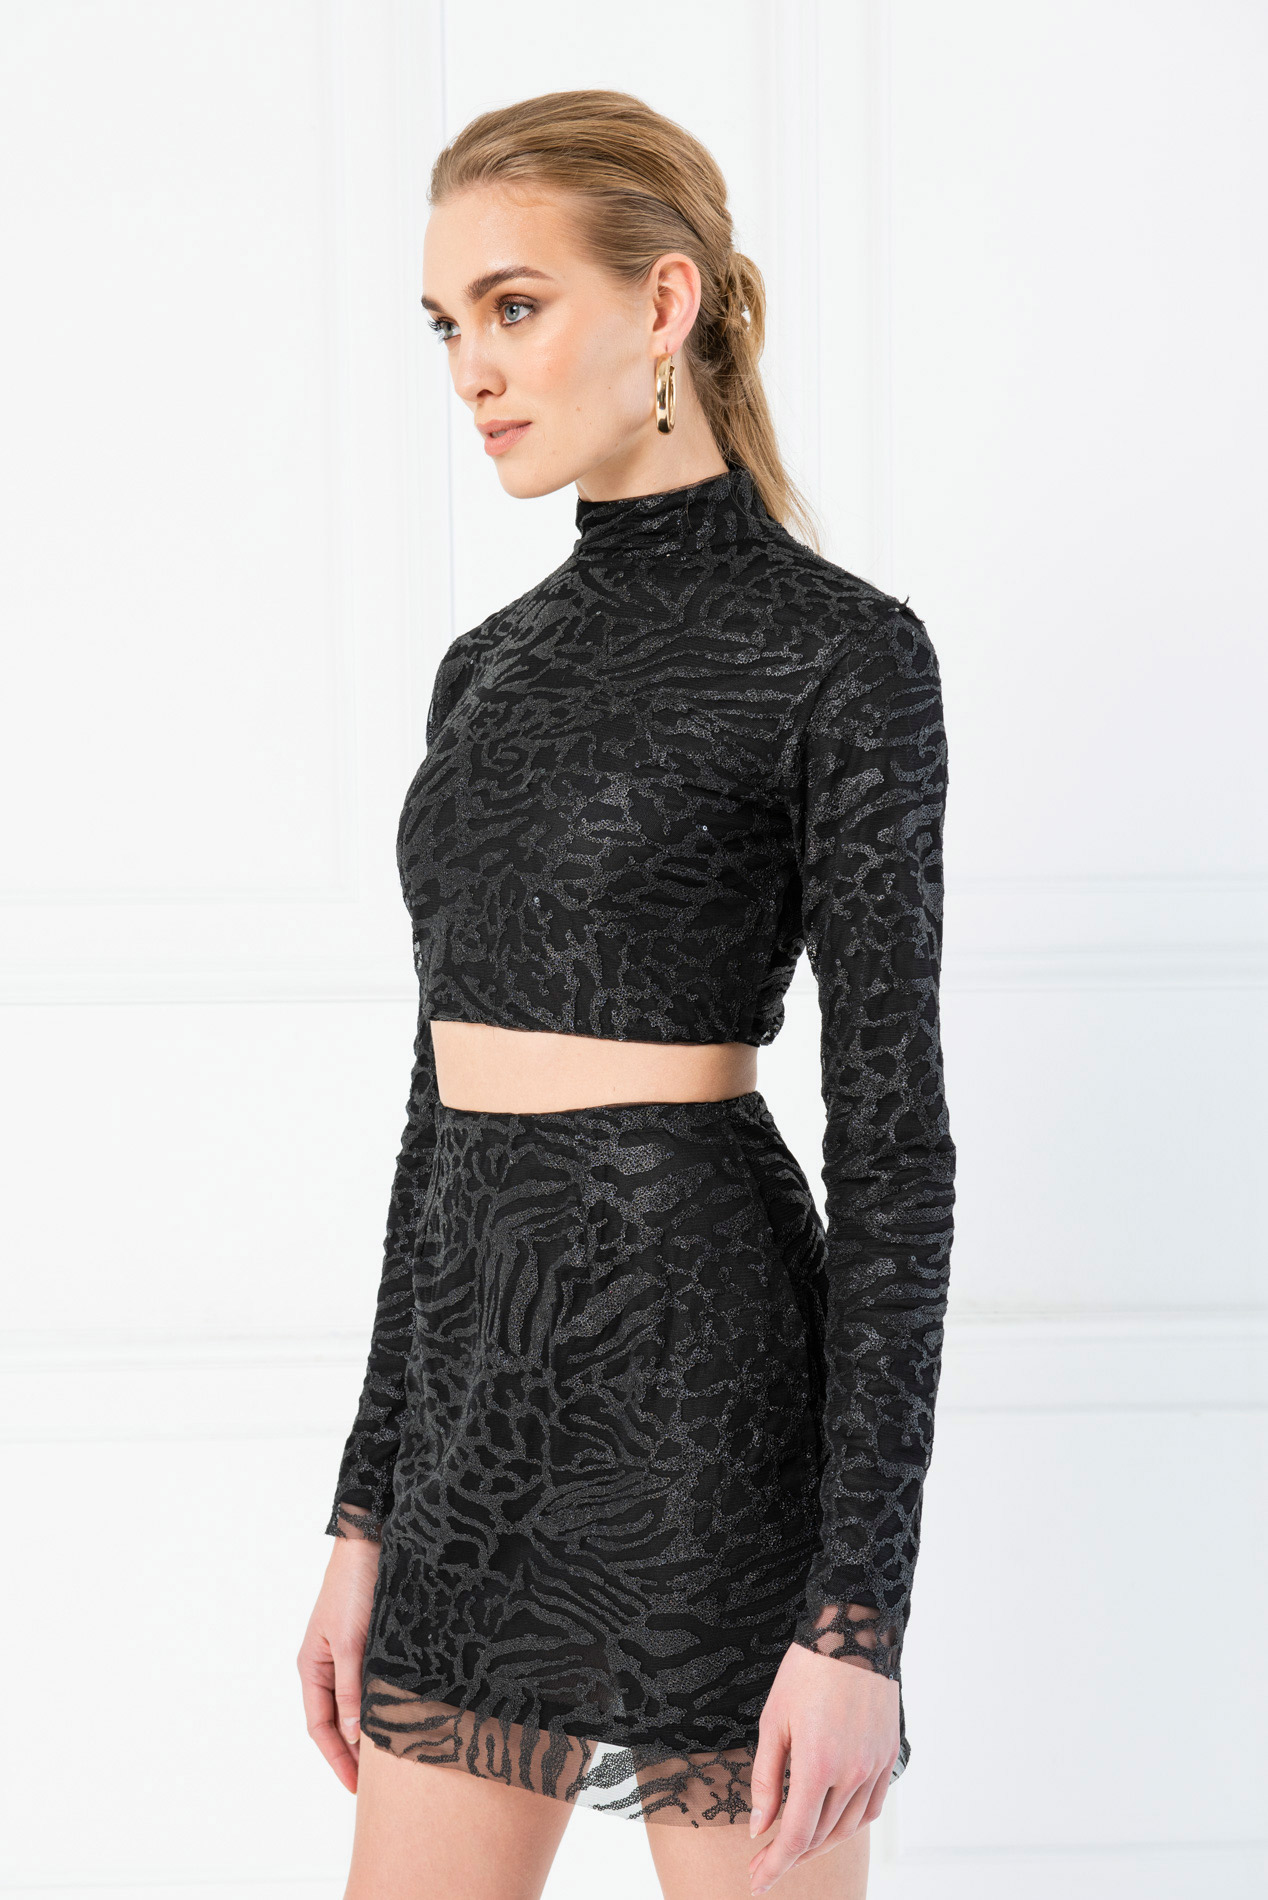 black sequin crop top and skirt